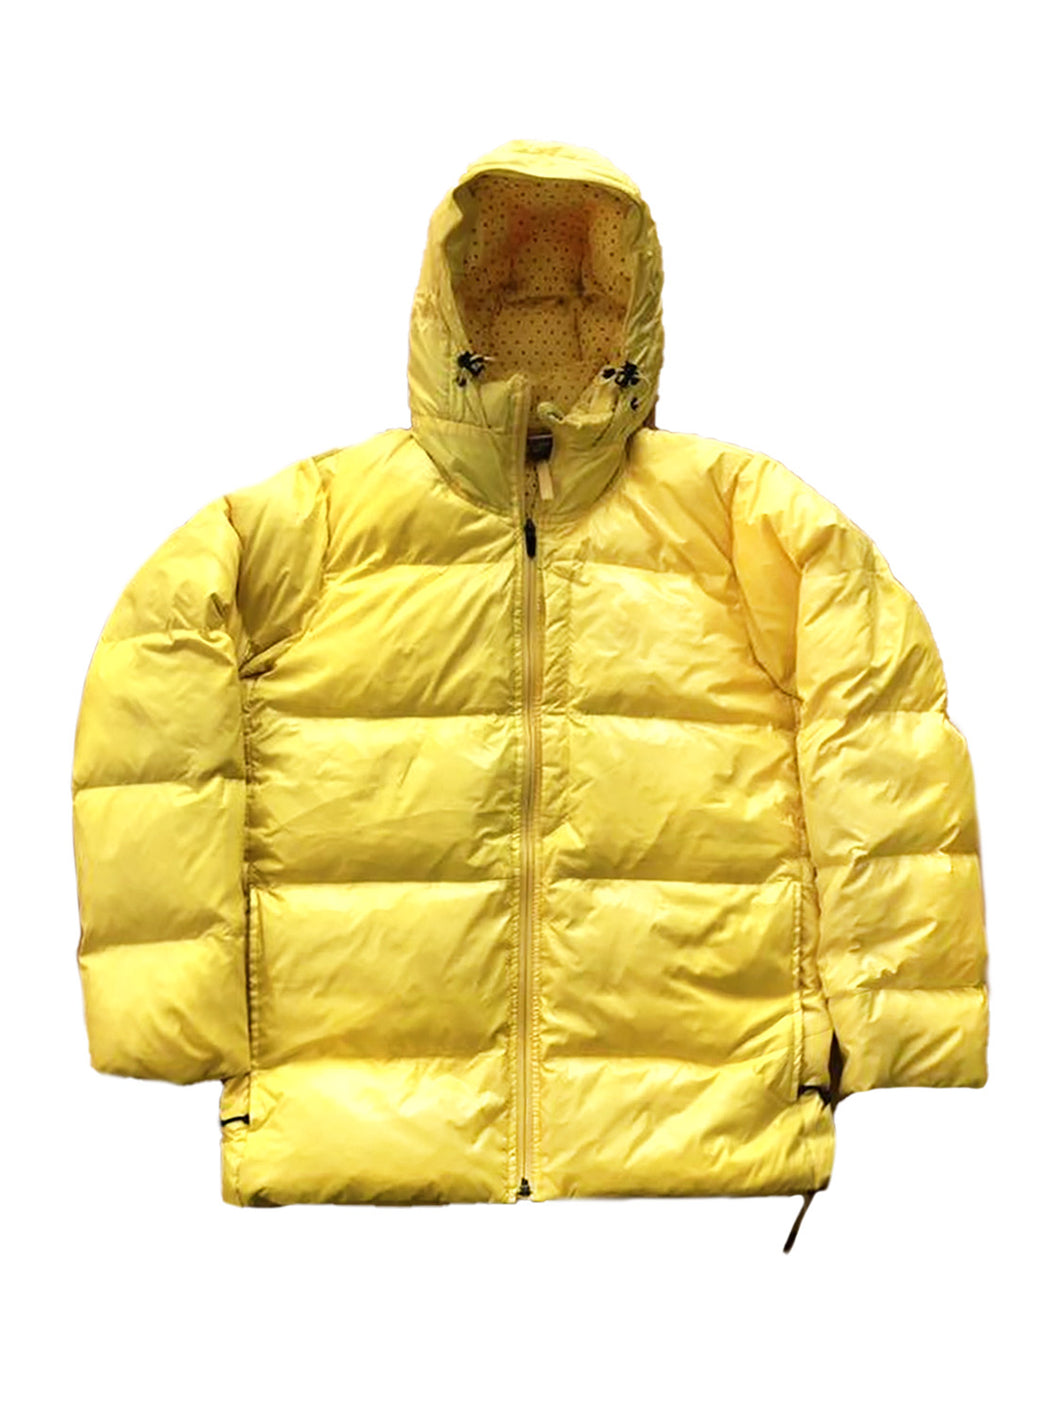 Nike 800 Yellow Puffer Jacket